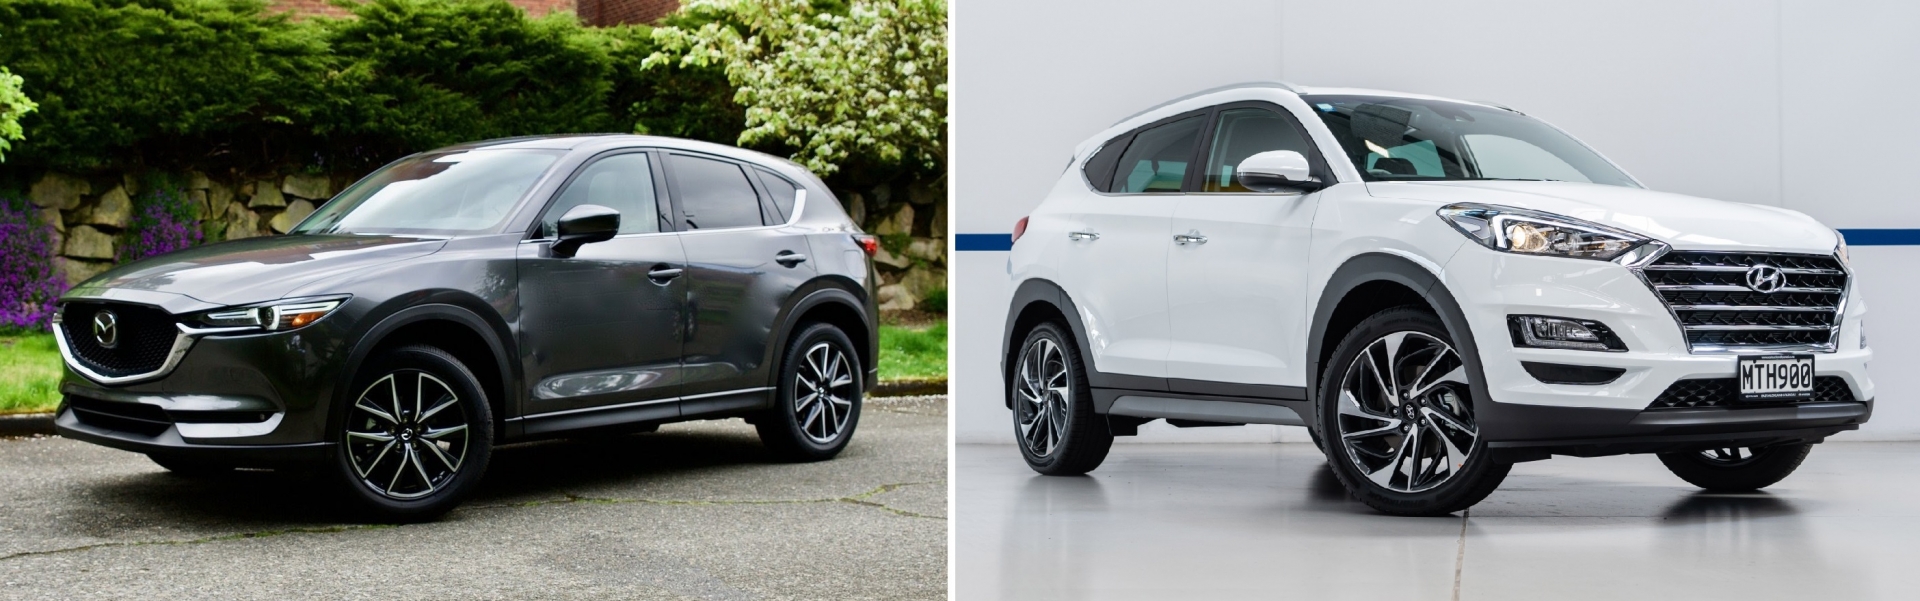 Mazda CX-5 vs Hyundai Tucson: Cuộc đối đầu SUV Nhật - Hàn tầm giá 1 tỷ đồng - 1